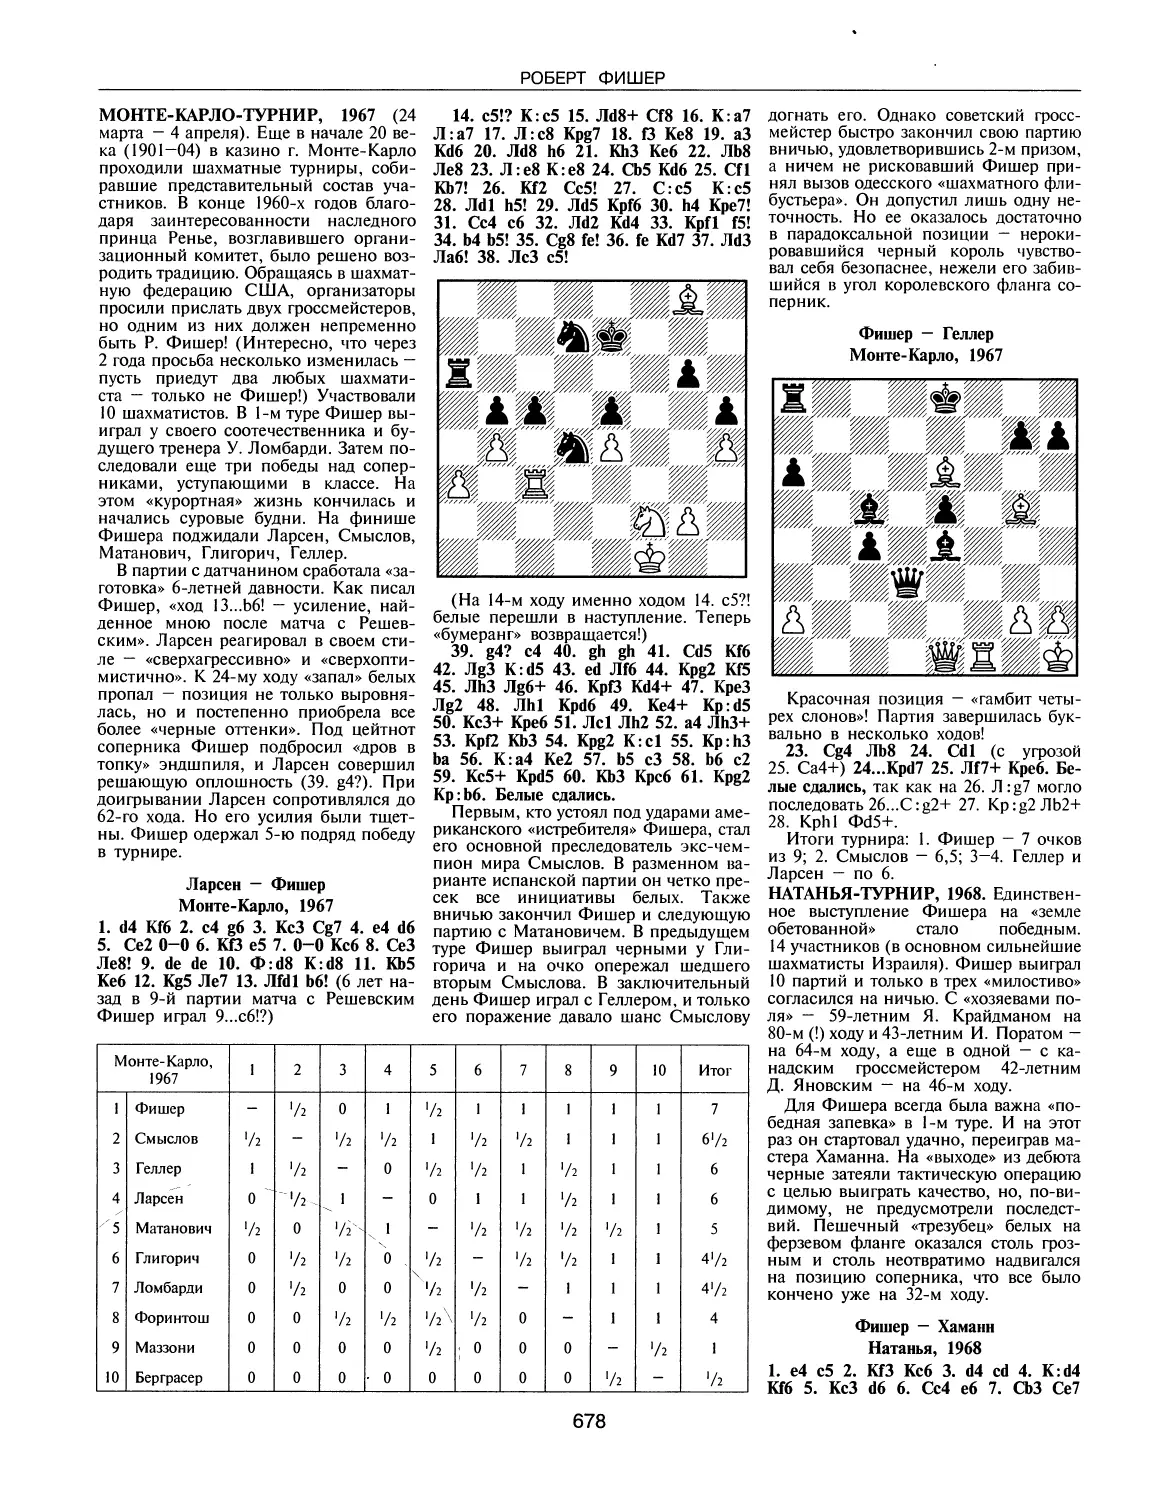 Монте-Карло-турнир, 1967
Натанья-турнир, 1968